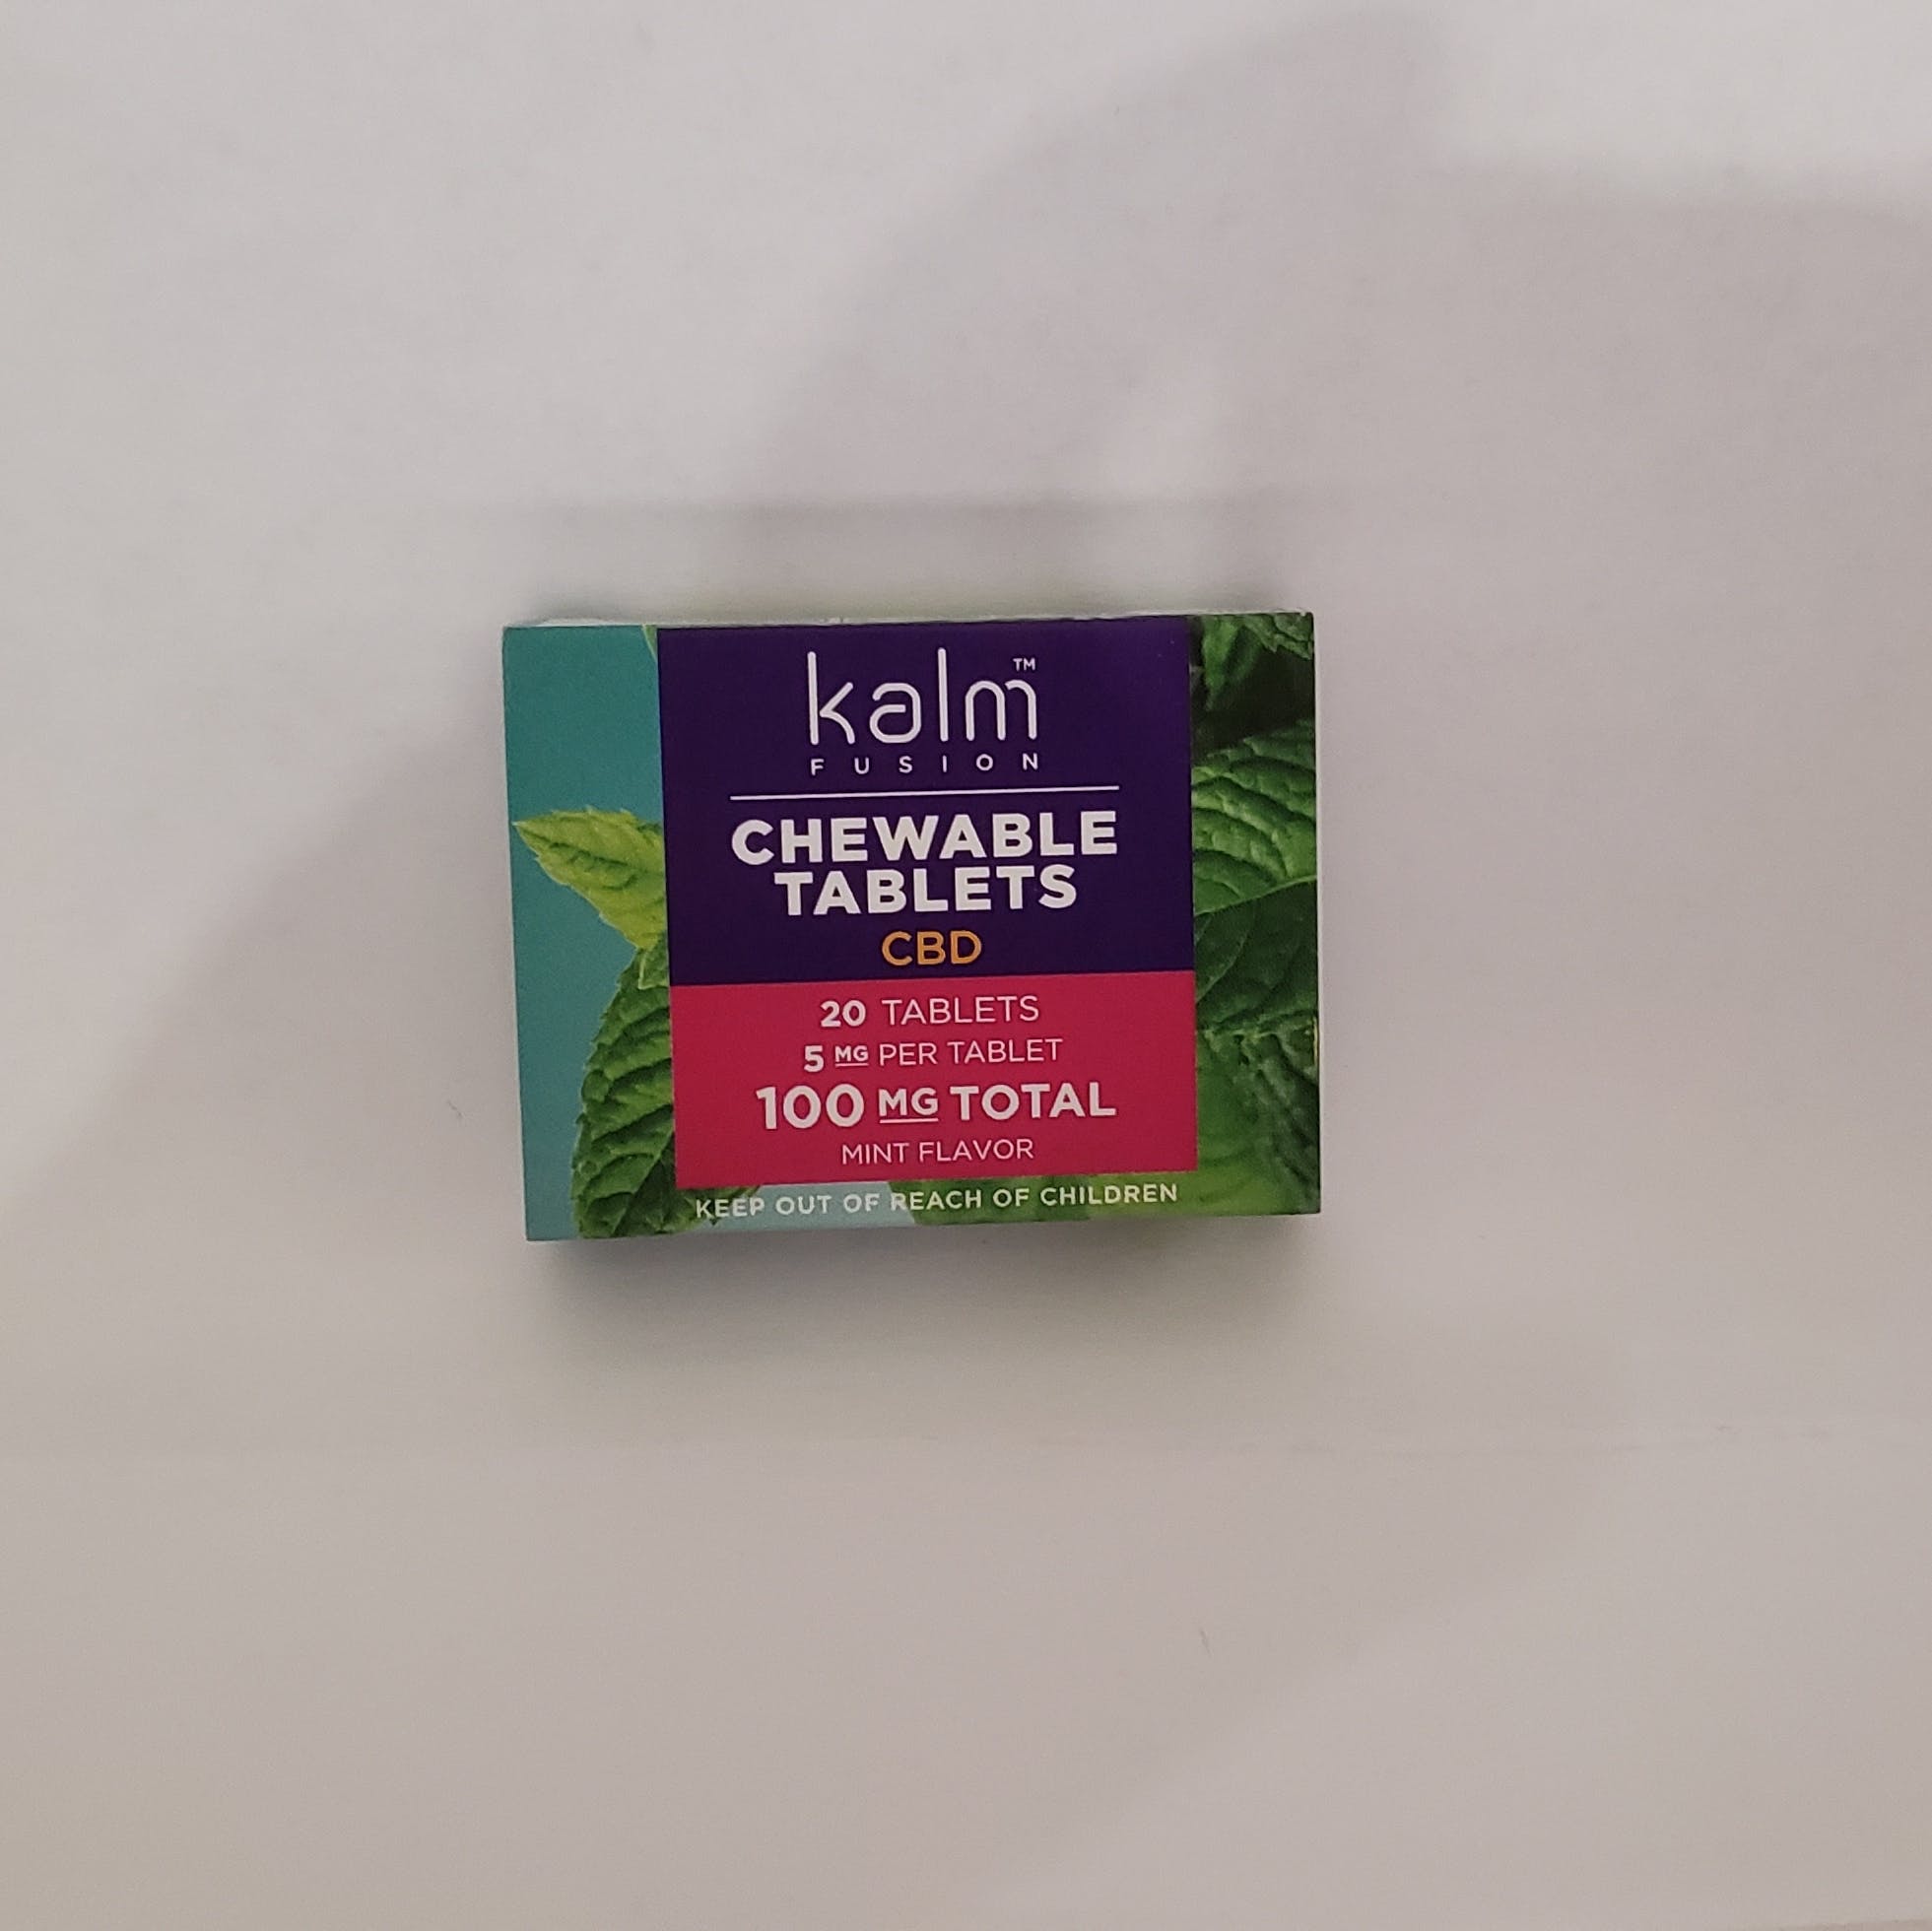 Kalm Chewable CBD 100mg Tablets